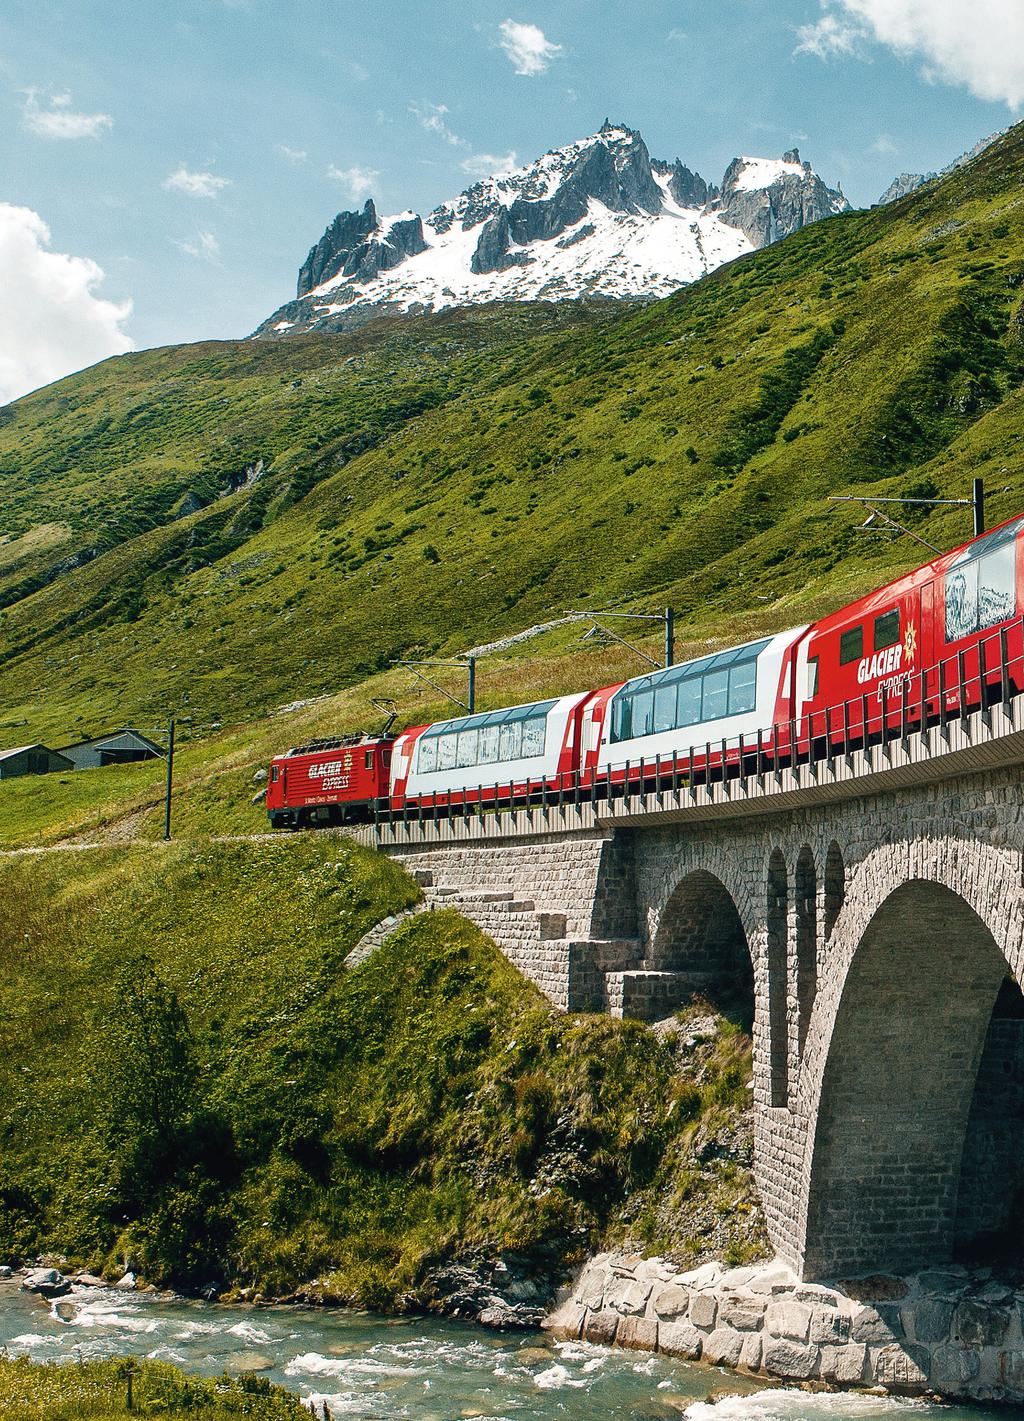 Grand Train Tour of Switzerland.